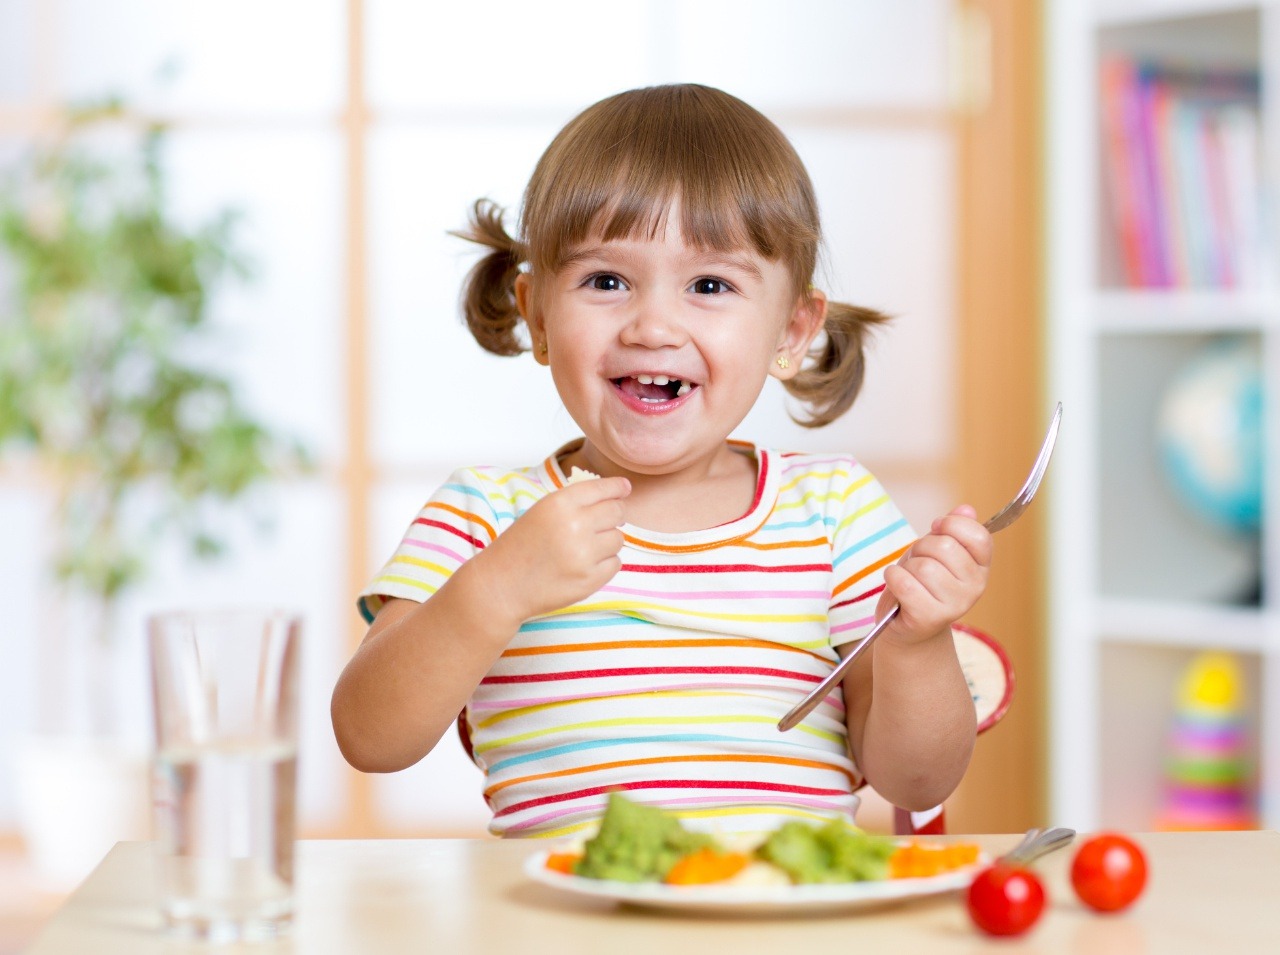 Veďte svoje dieťa k zdravému stravovaniu už od malička. 